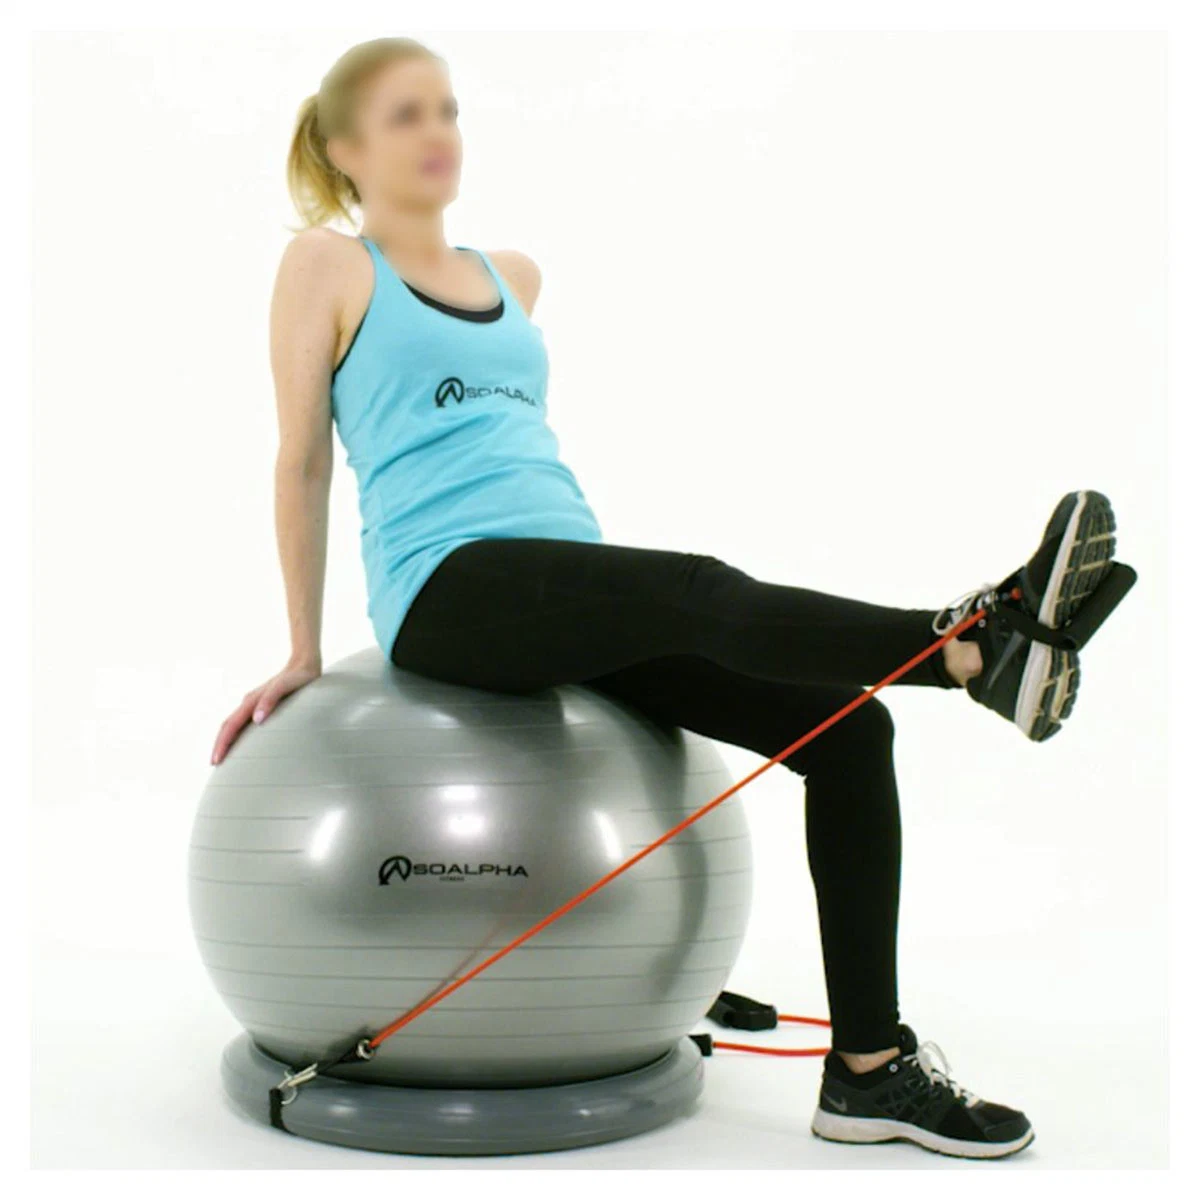 Yoga und Pilates Übung Ball Chair System 65 cm Ball mit Stability Base und Workout Widerstandsbänder für Fitness-Studio, Home oder Office Bl13023